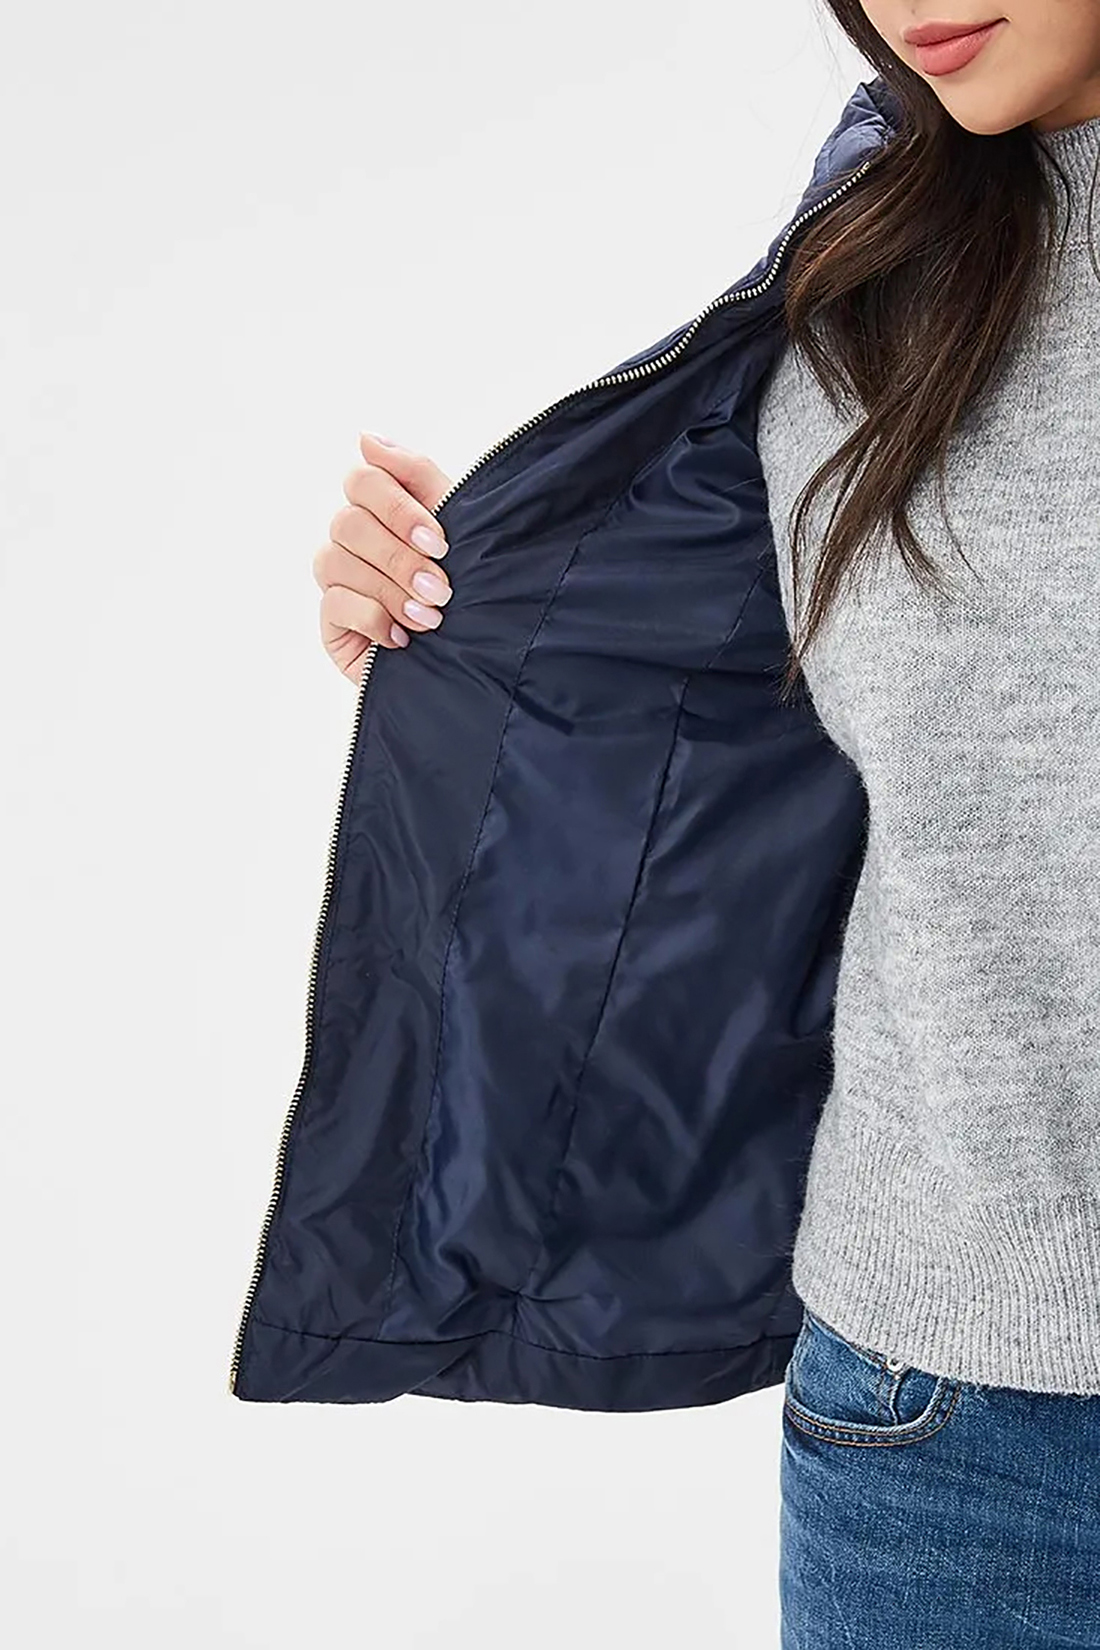 Стёганая куртка с крупной фурнитурой (арт. baon B039015), размер L, цвет синий Стёганая куртка с крупной фурнитурой (арт. baon B039015) - фото 3